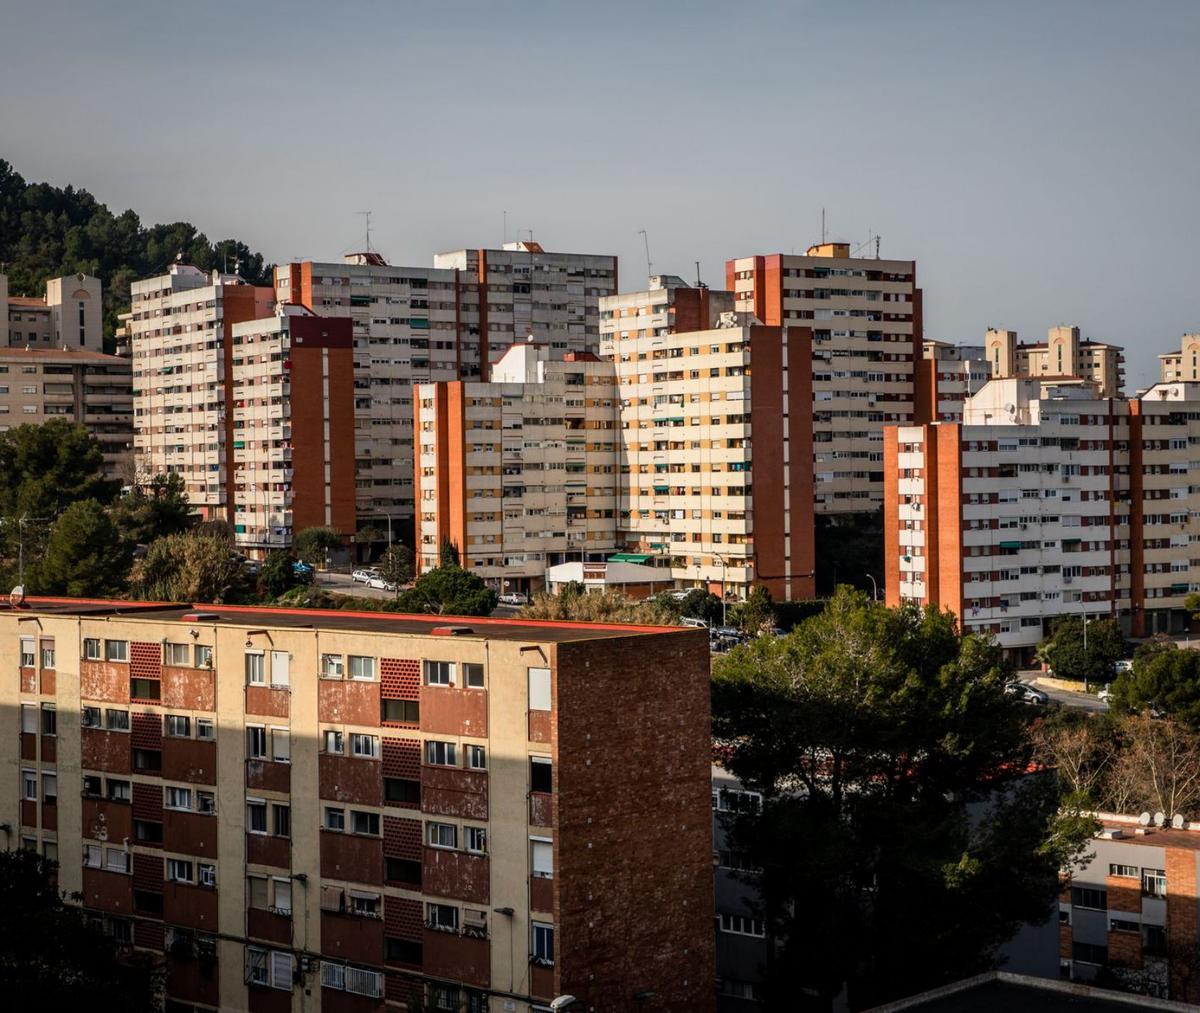 Només 19 barris de BCN tenen pisos de lloguer a menys de 900 euros